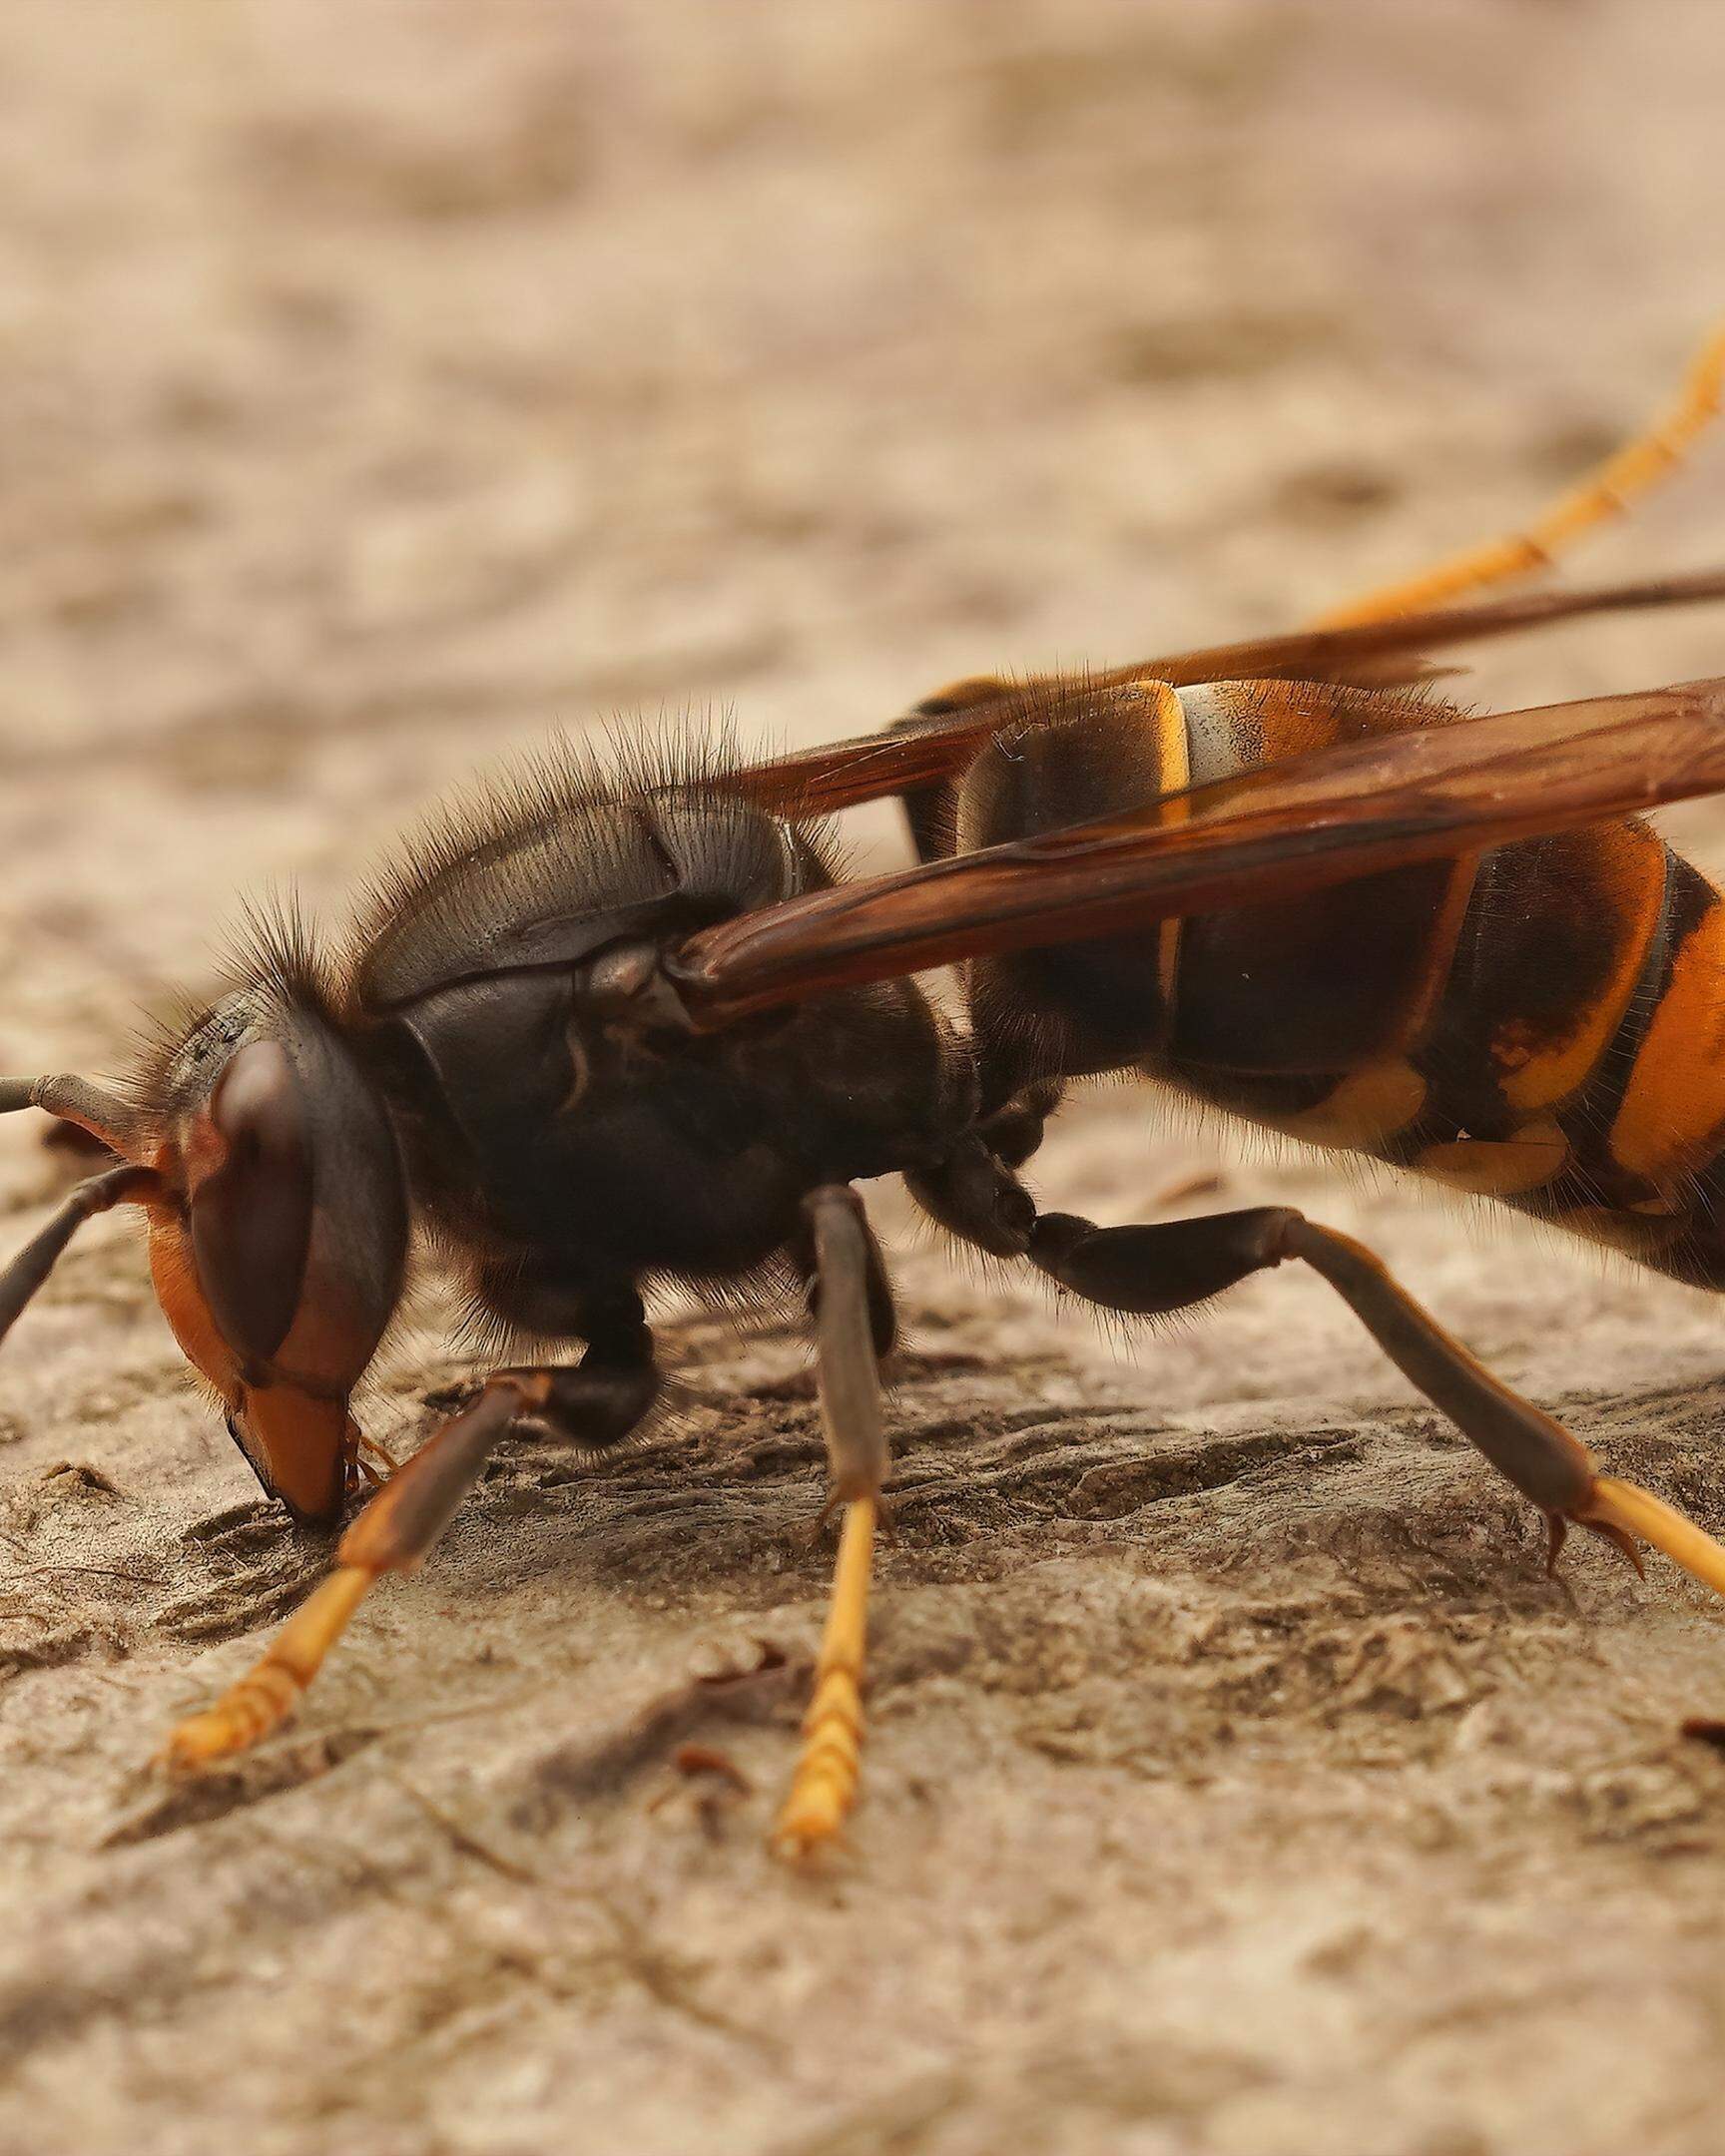 Binnen kürzester Zeit kann eine asiatische Hornisse einen Bienenstock zerstören.  Foto: Marc Wilwert